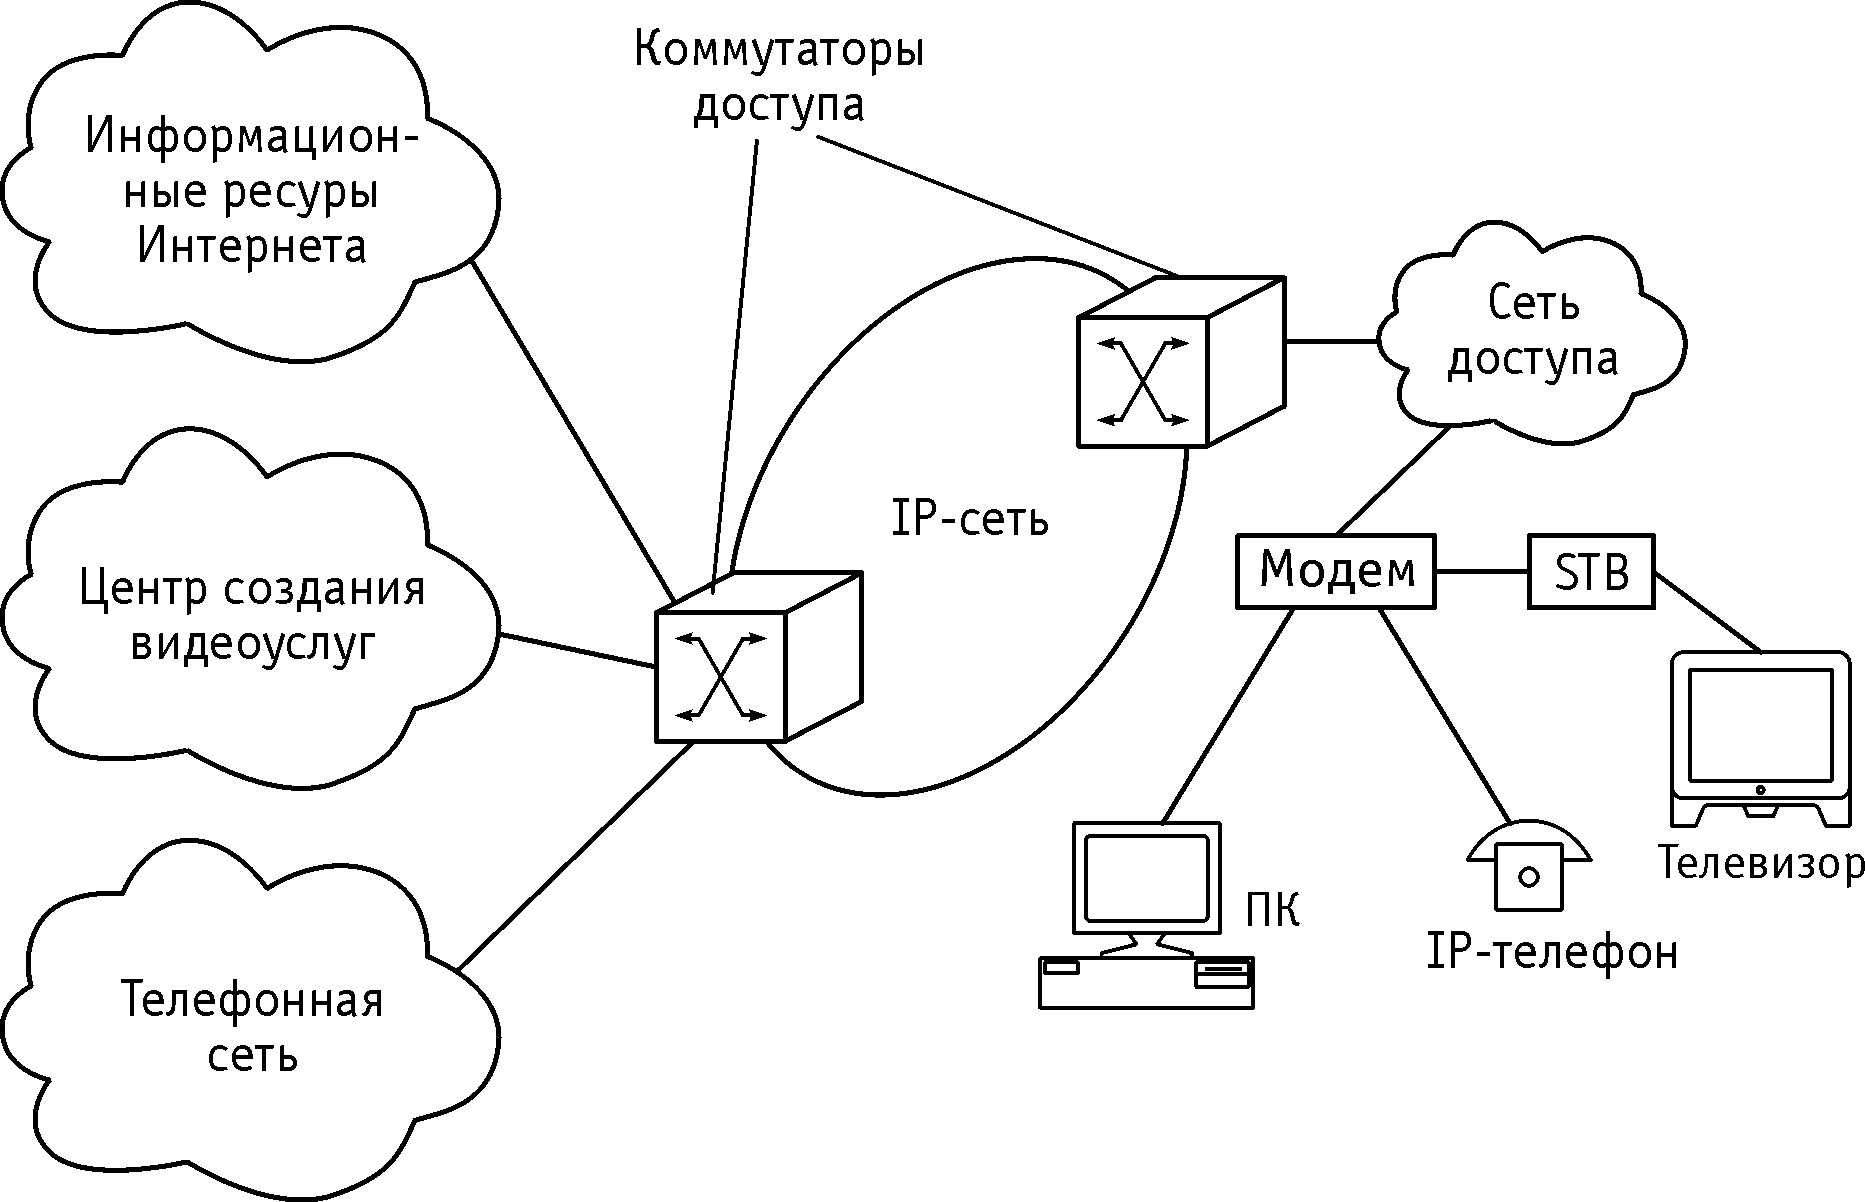 Организация ip сетей. Схема мультисервисной корпоративной сети. Архитектура мультисервисных сетей IP-типа. Структурная схема мультисервисных сетей. Обобщенная структурная схема IP-сети.